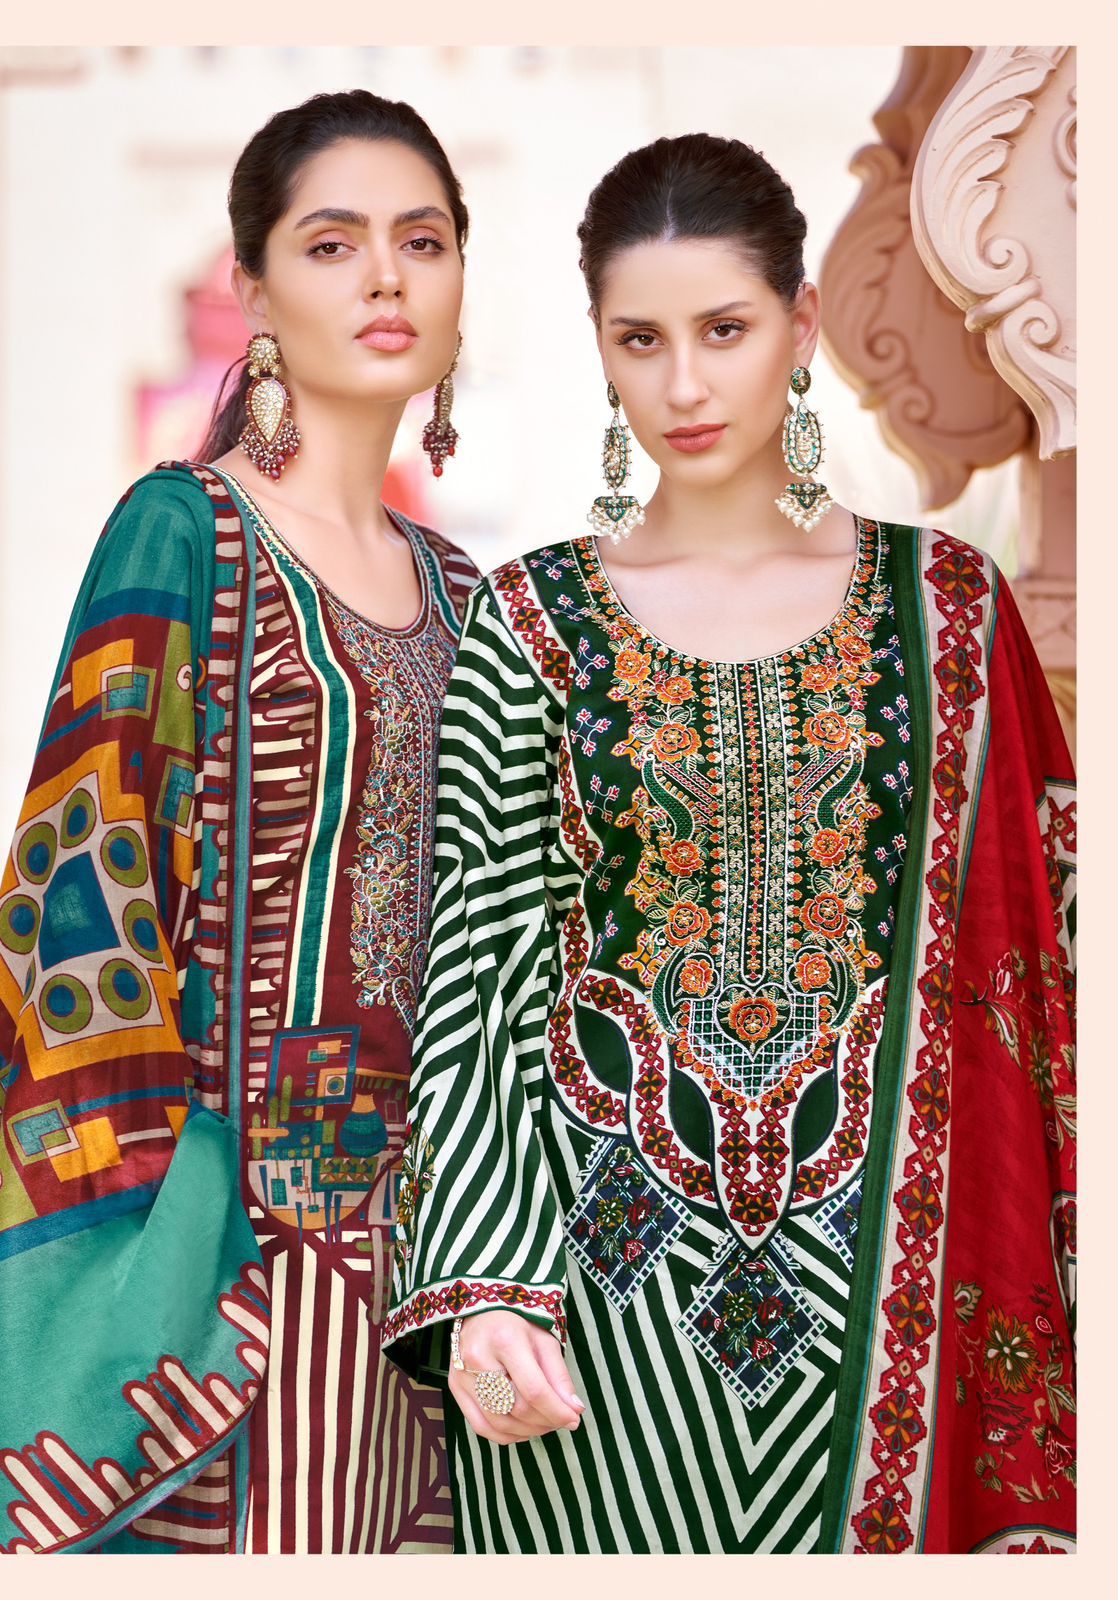 Habiba Edition 4 Alok Pure Cotton Karachi Salwar Suits